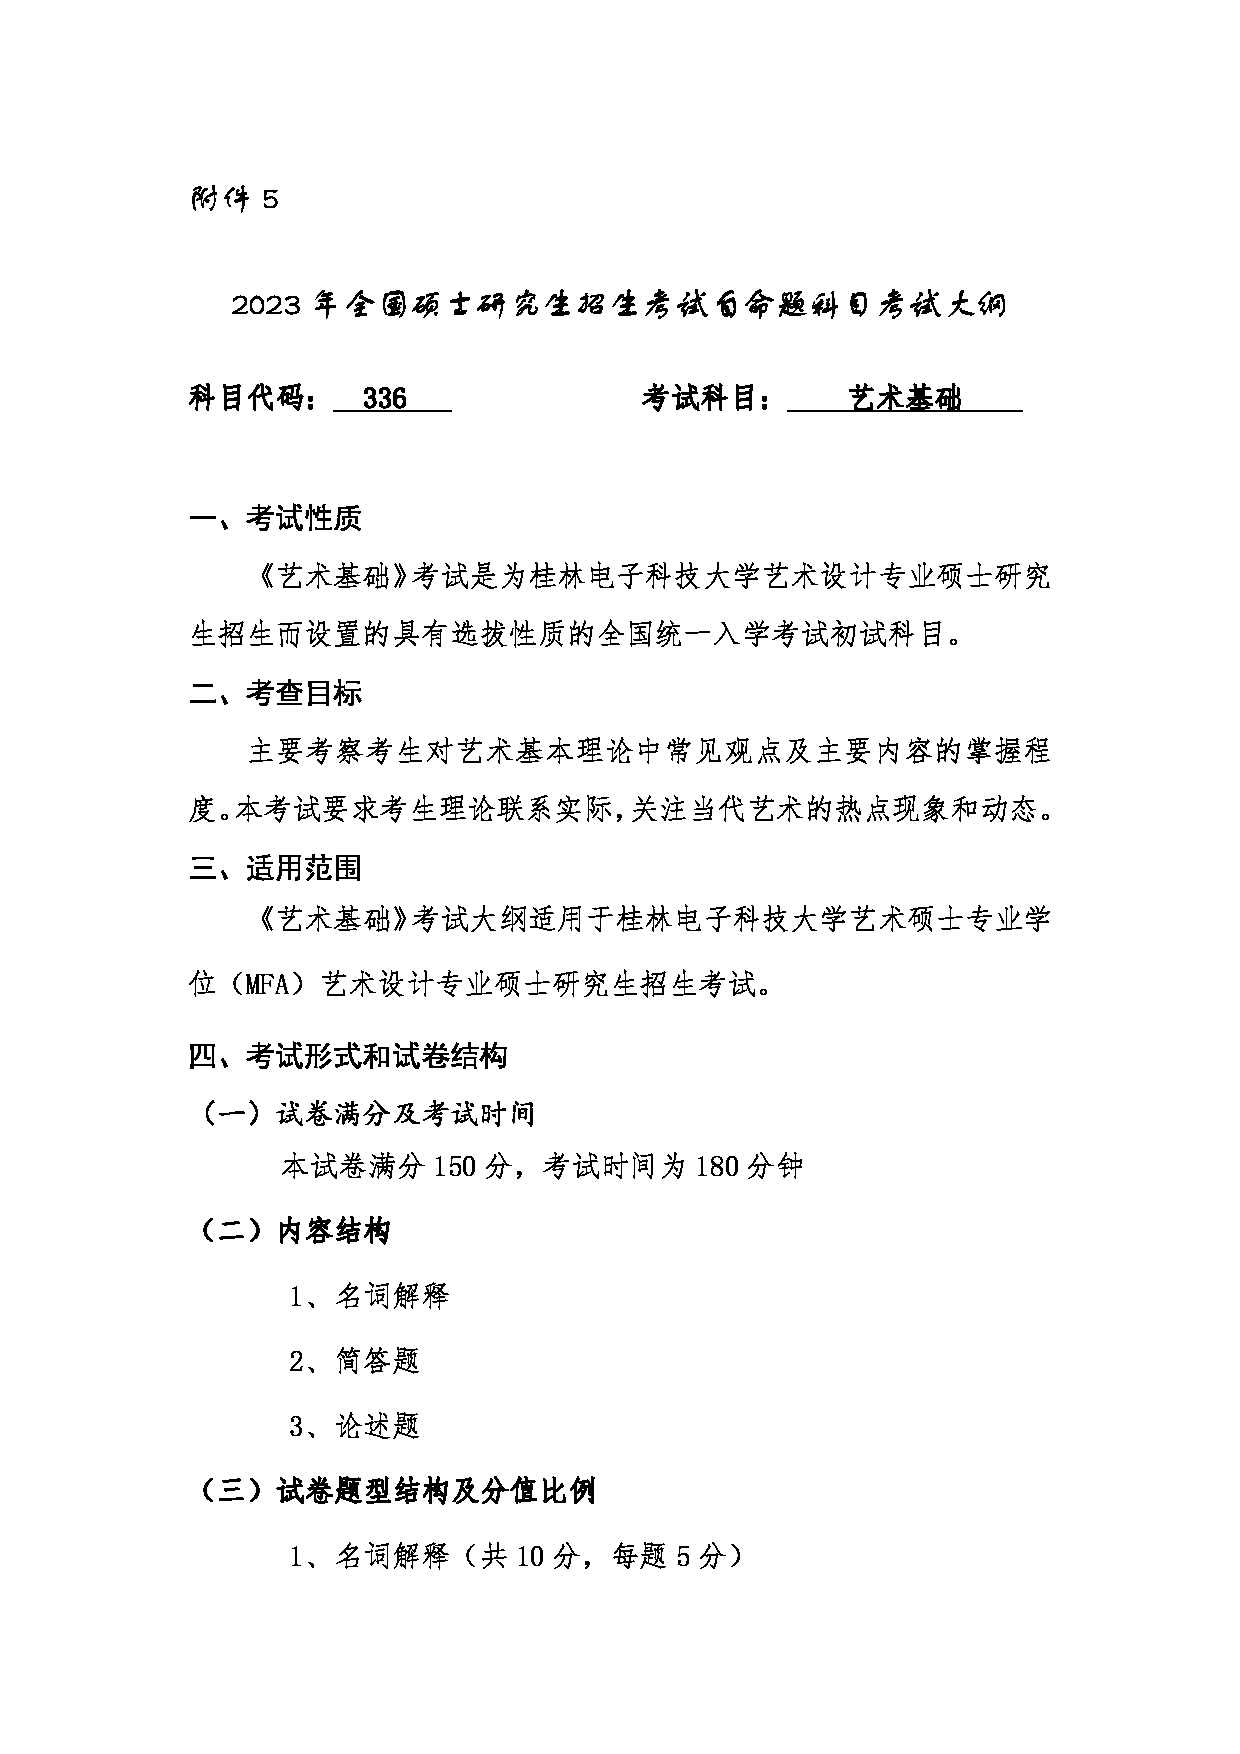 2023考研大纲：桂林电子科技大学2023年考研科目 （336艺术基础) 考试大纲第1页